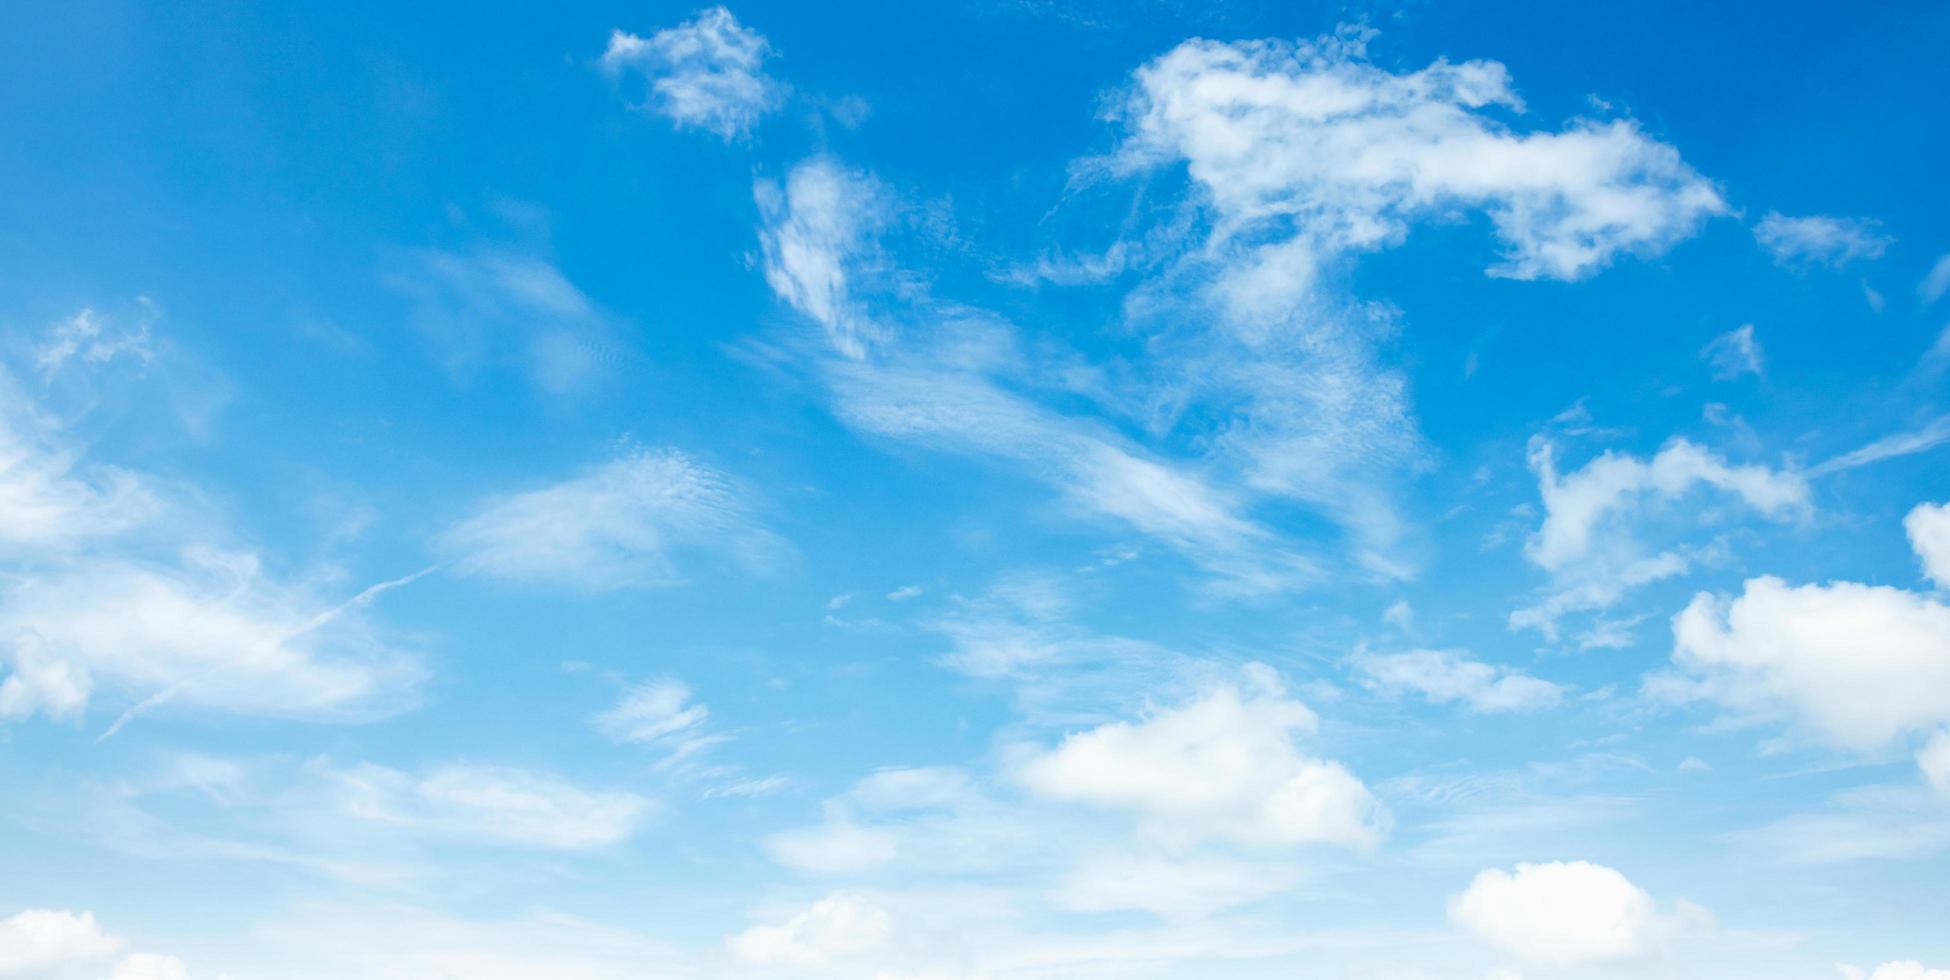 cielo azul con fondo de paisaje de nube blanca foto